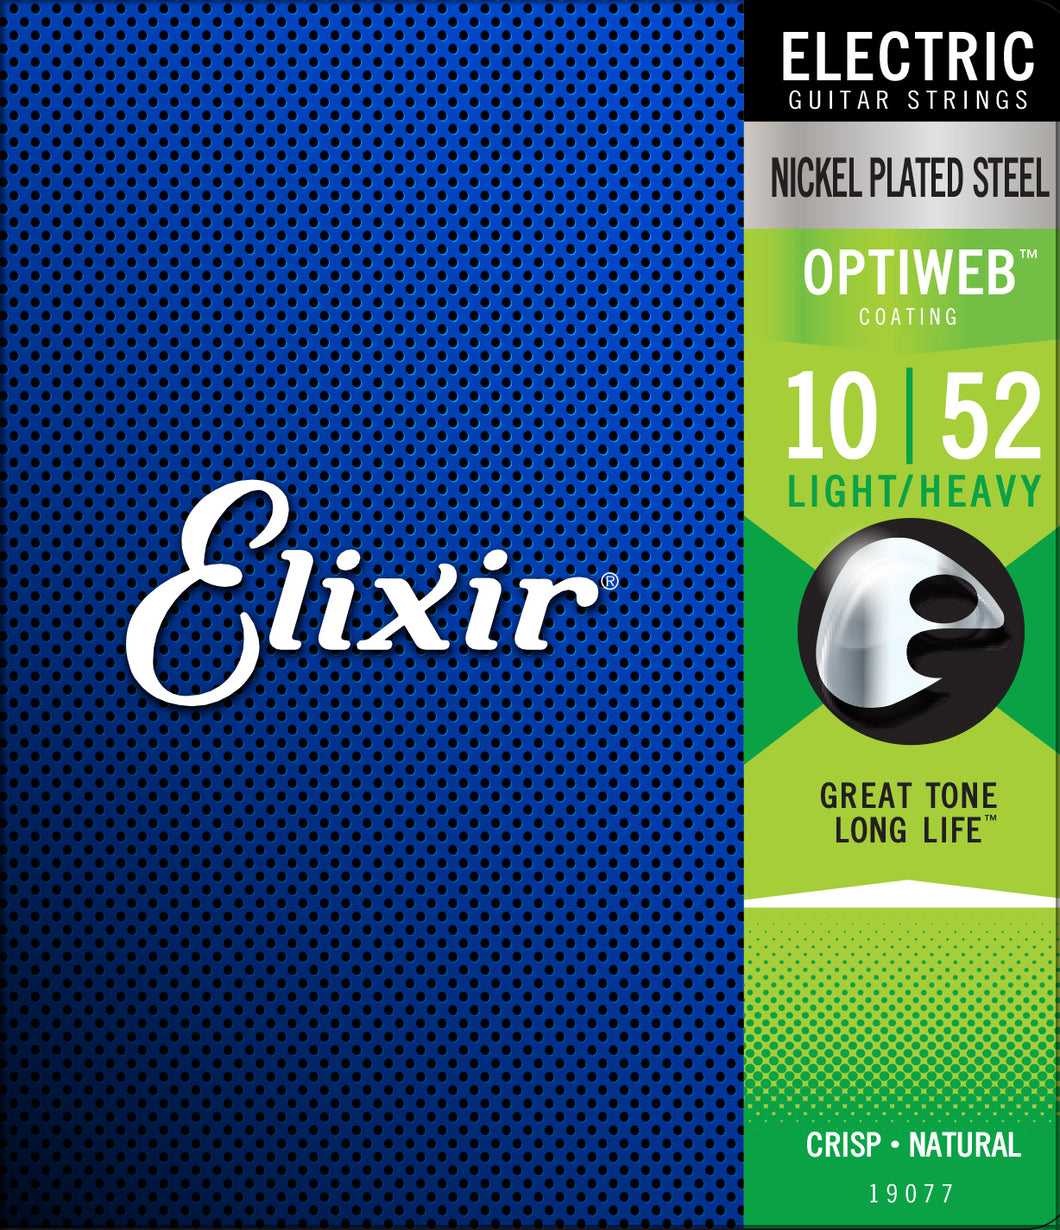 Elixir Optiweb Nickel Plated Steel 10-52 Electric Guitar Strings